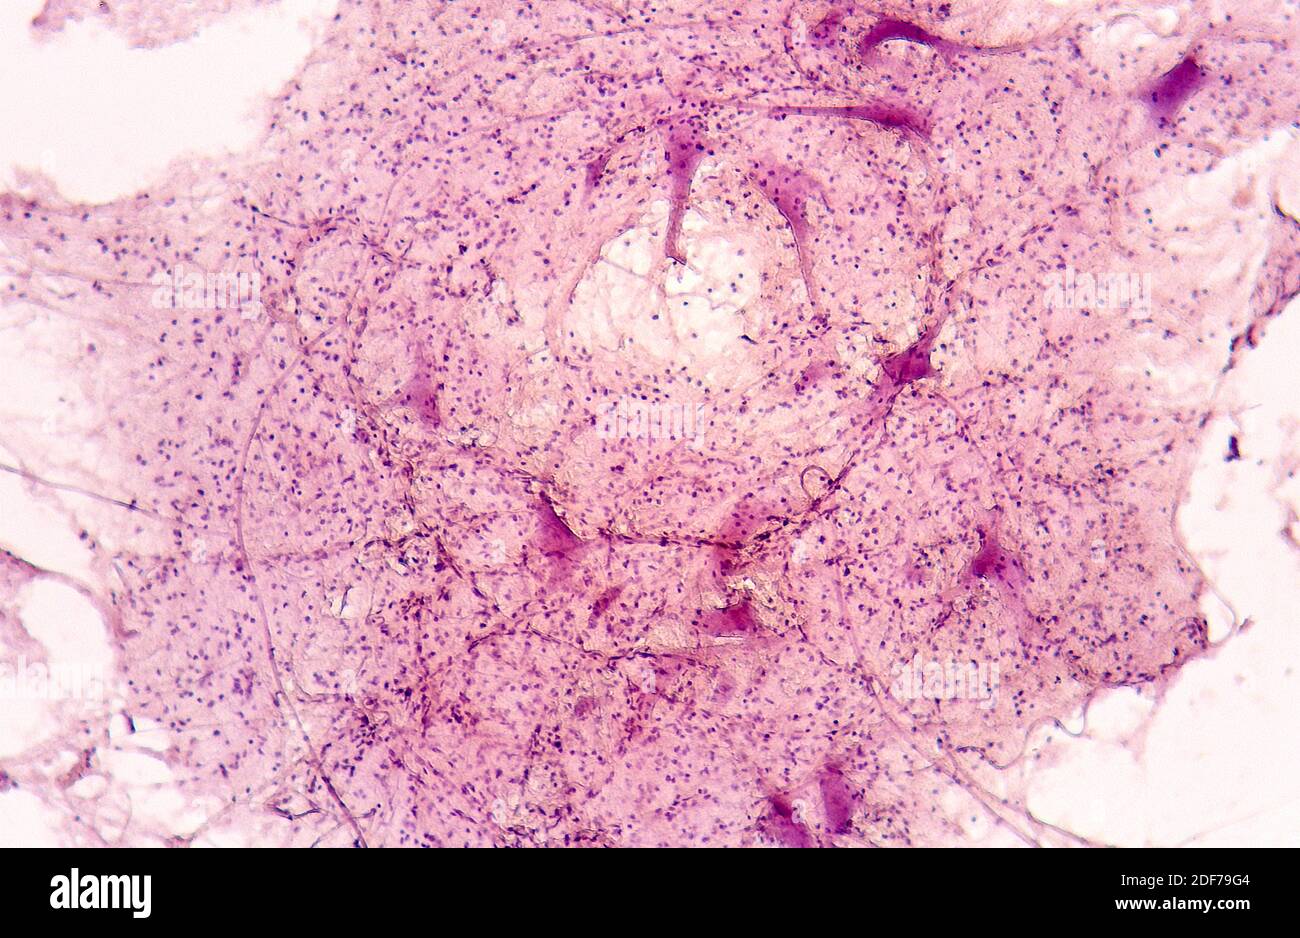 Axone von motorischen Neuronen. Photomikrograph. Stockfoto